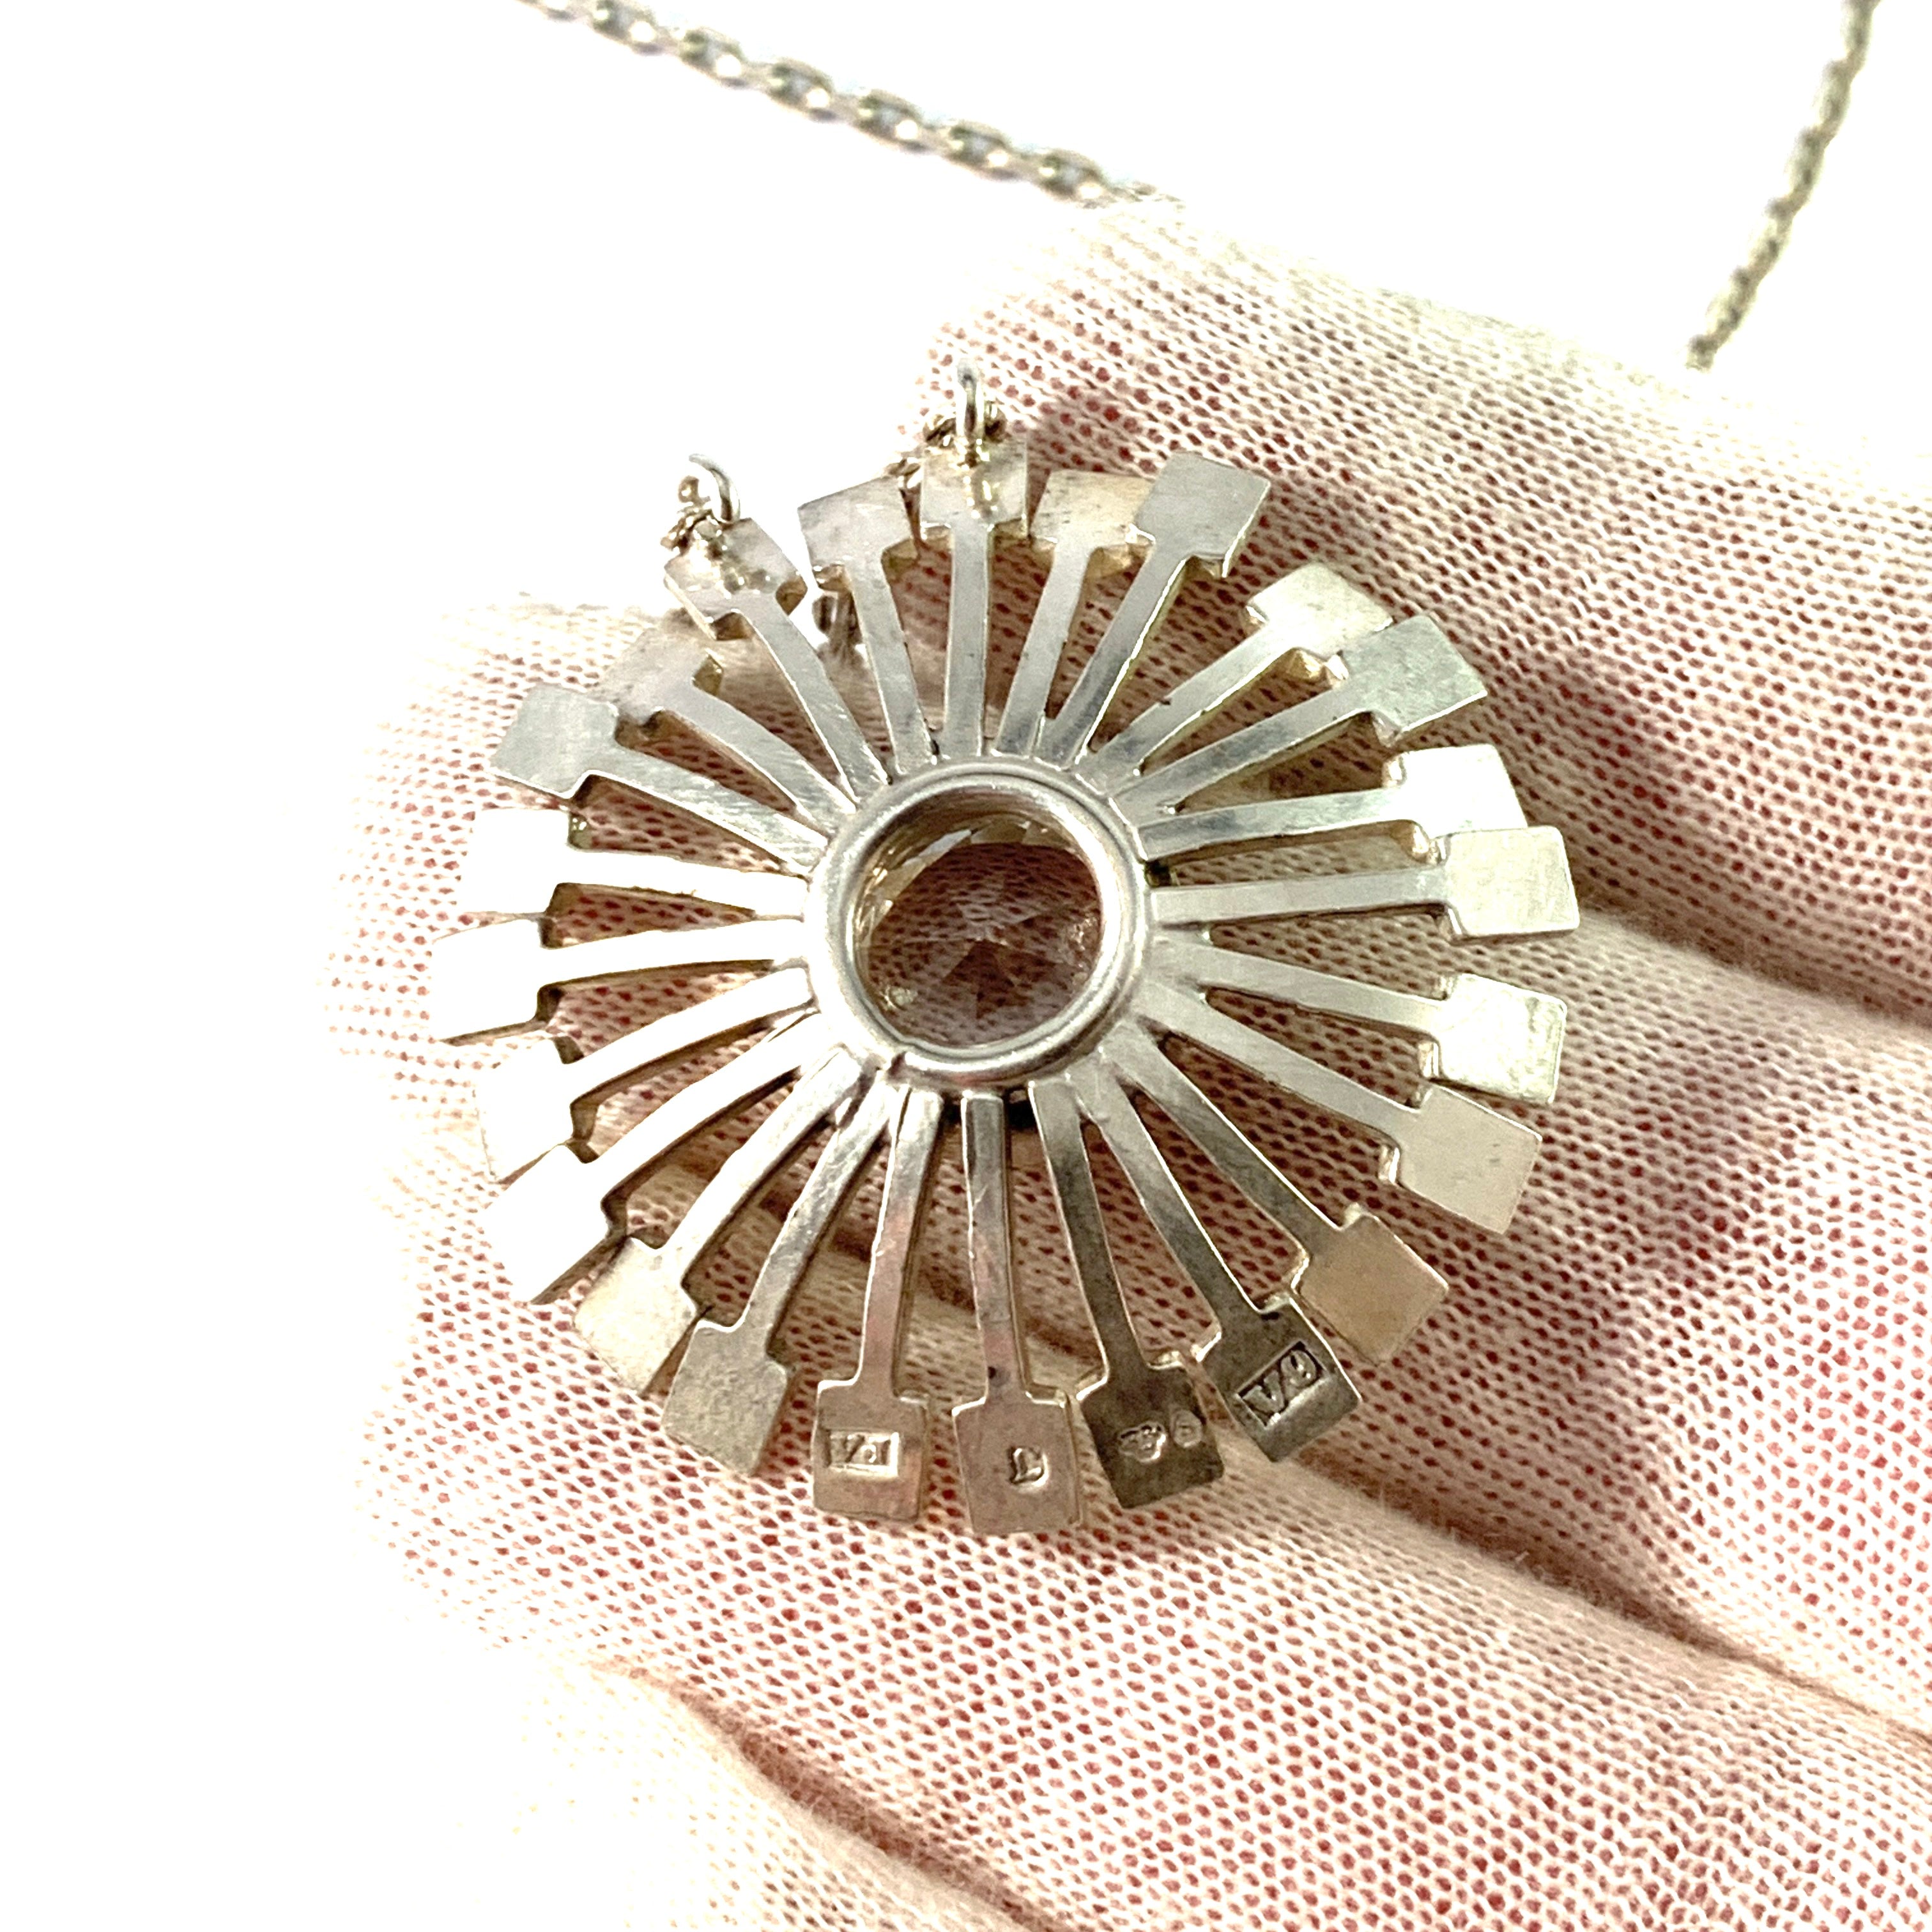 Victor Jansson, Sweden 1971. Vintage Sterling Silver Rock Crystal Pendant Necklace.